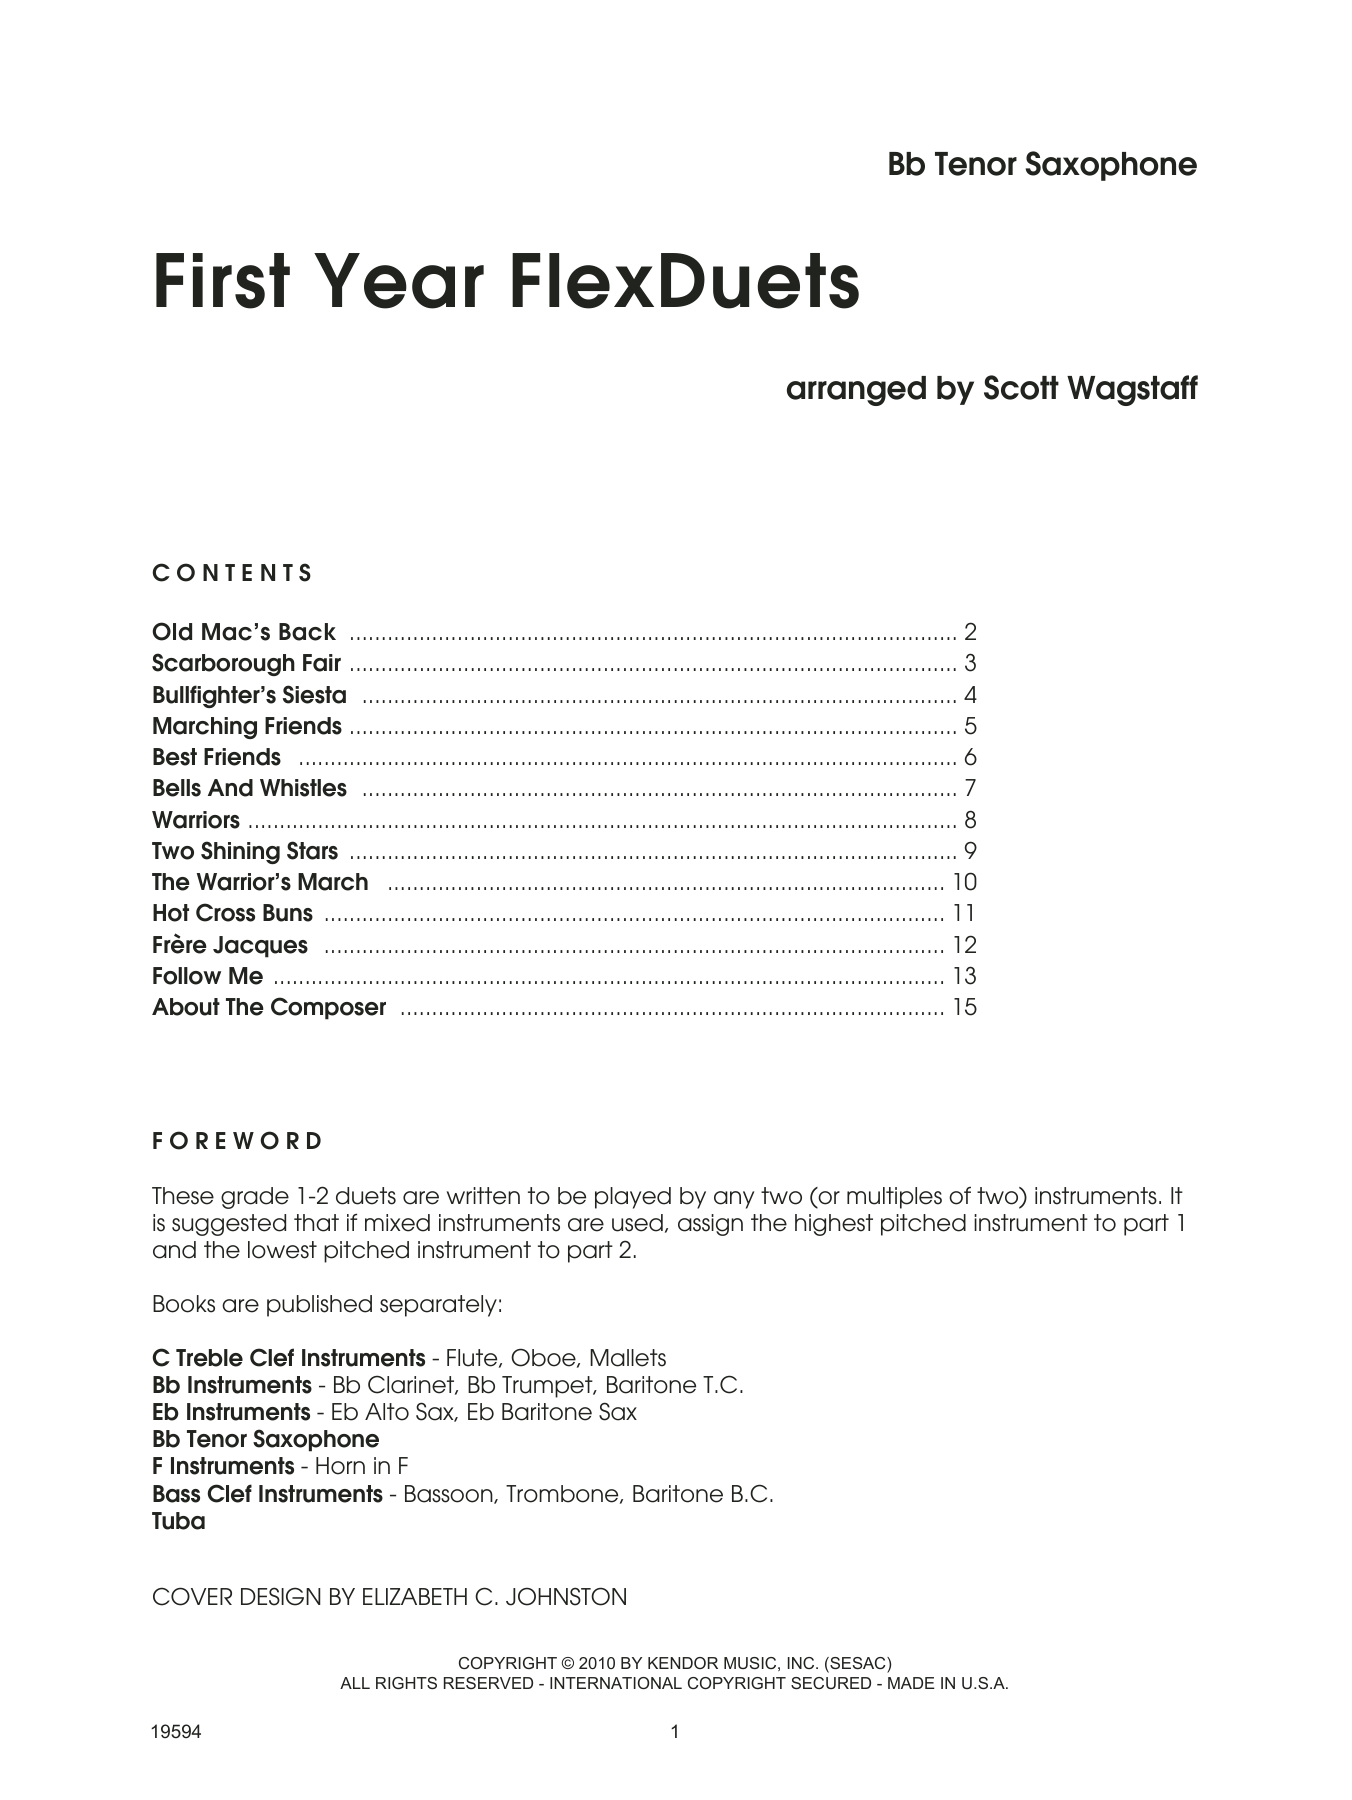 Download Scott Wagstaff First Year FlexDuets - Bb Tenor Sax Sheet Music